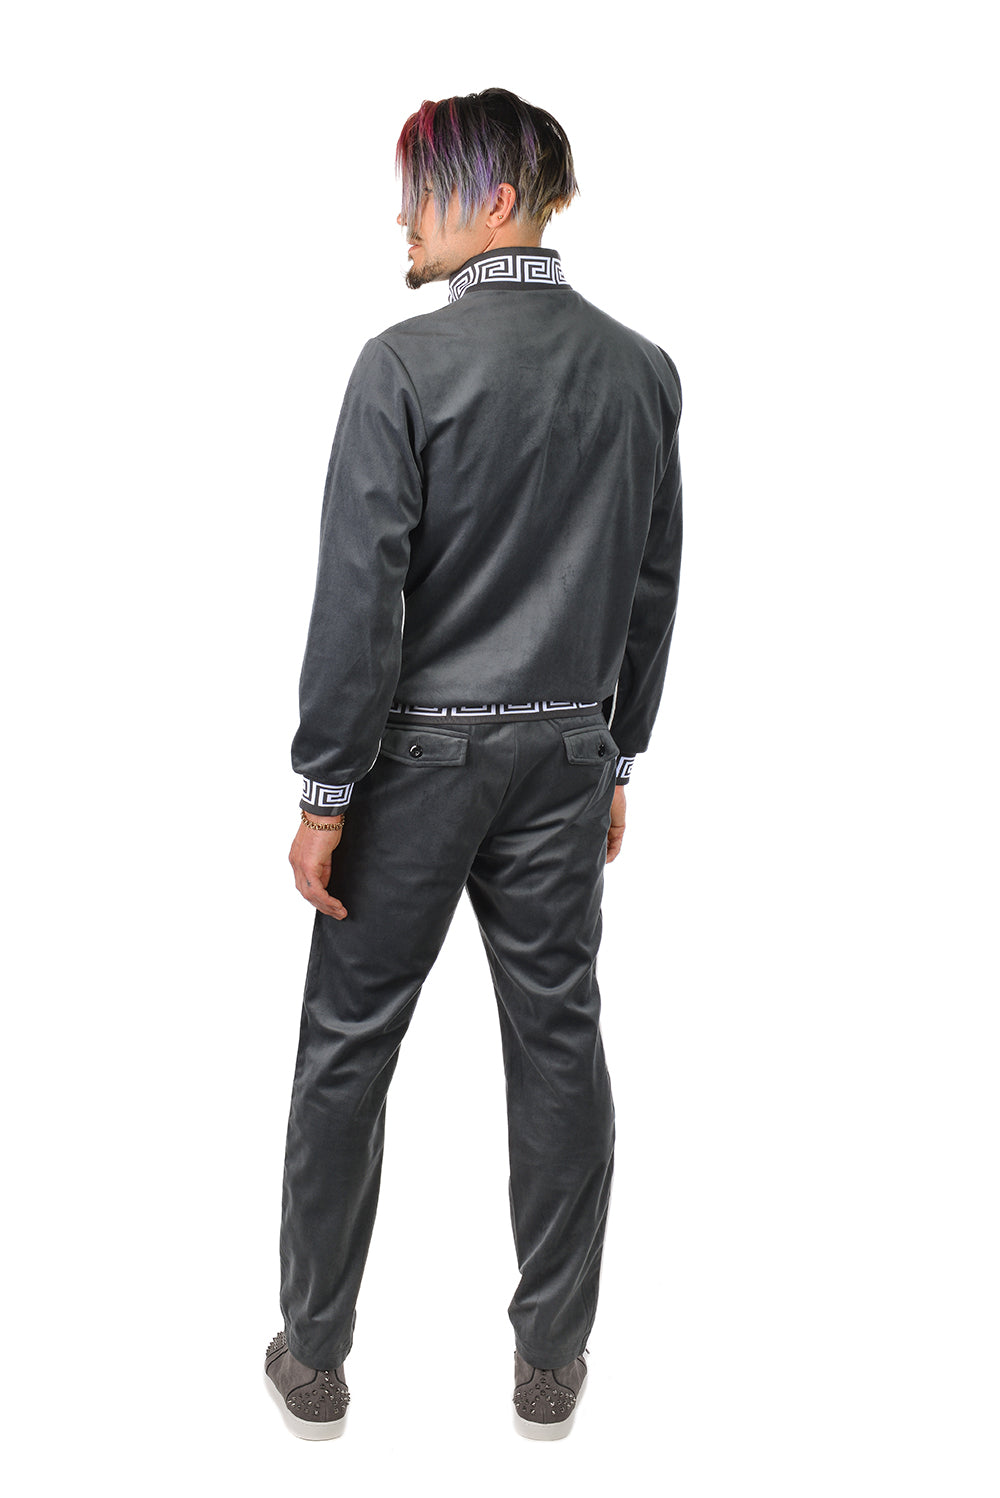 BARABAS Men's Casual Street Luxury Loungewear JJ900 Charcoal